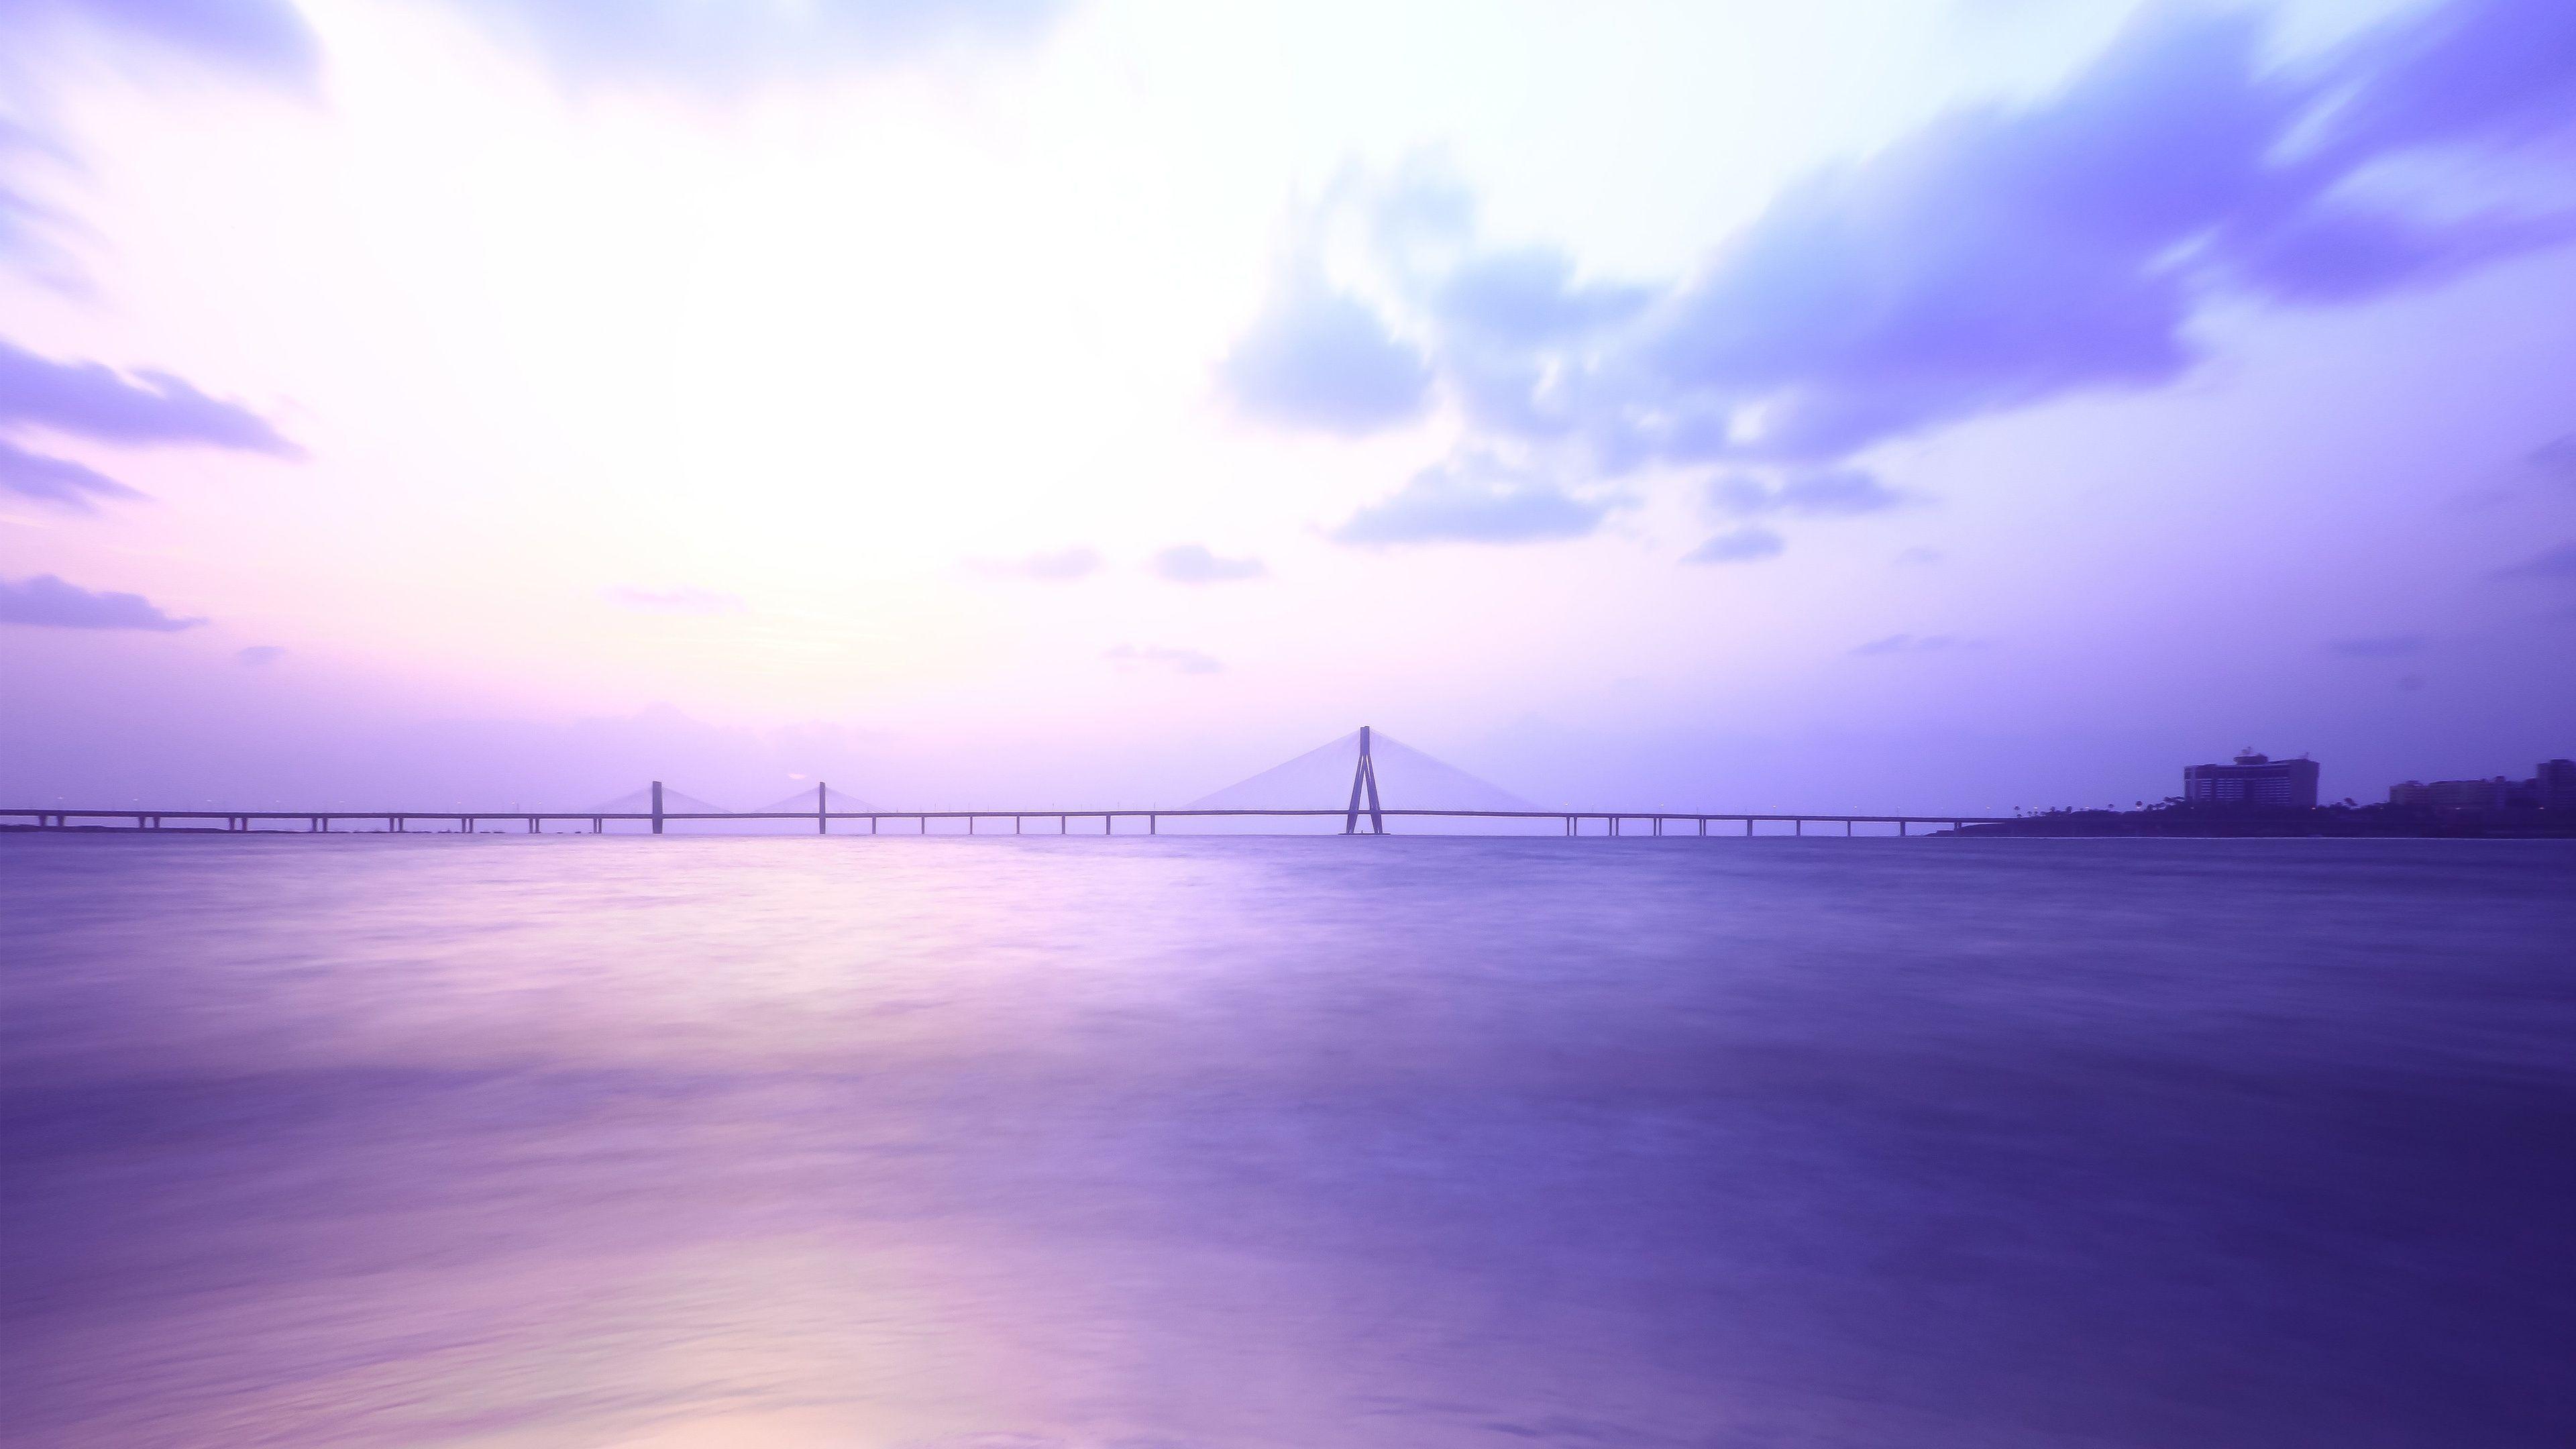 Shivaji Park Bridge Mumbai Wallpaper in jpg format for free download